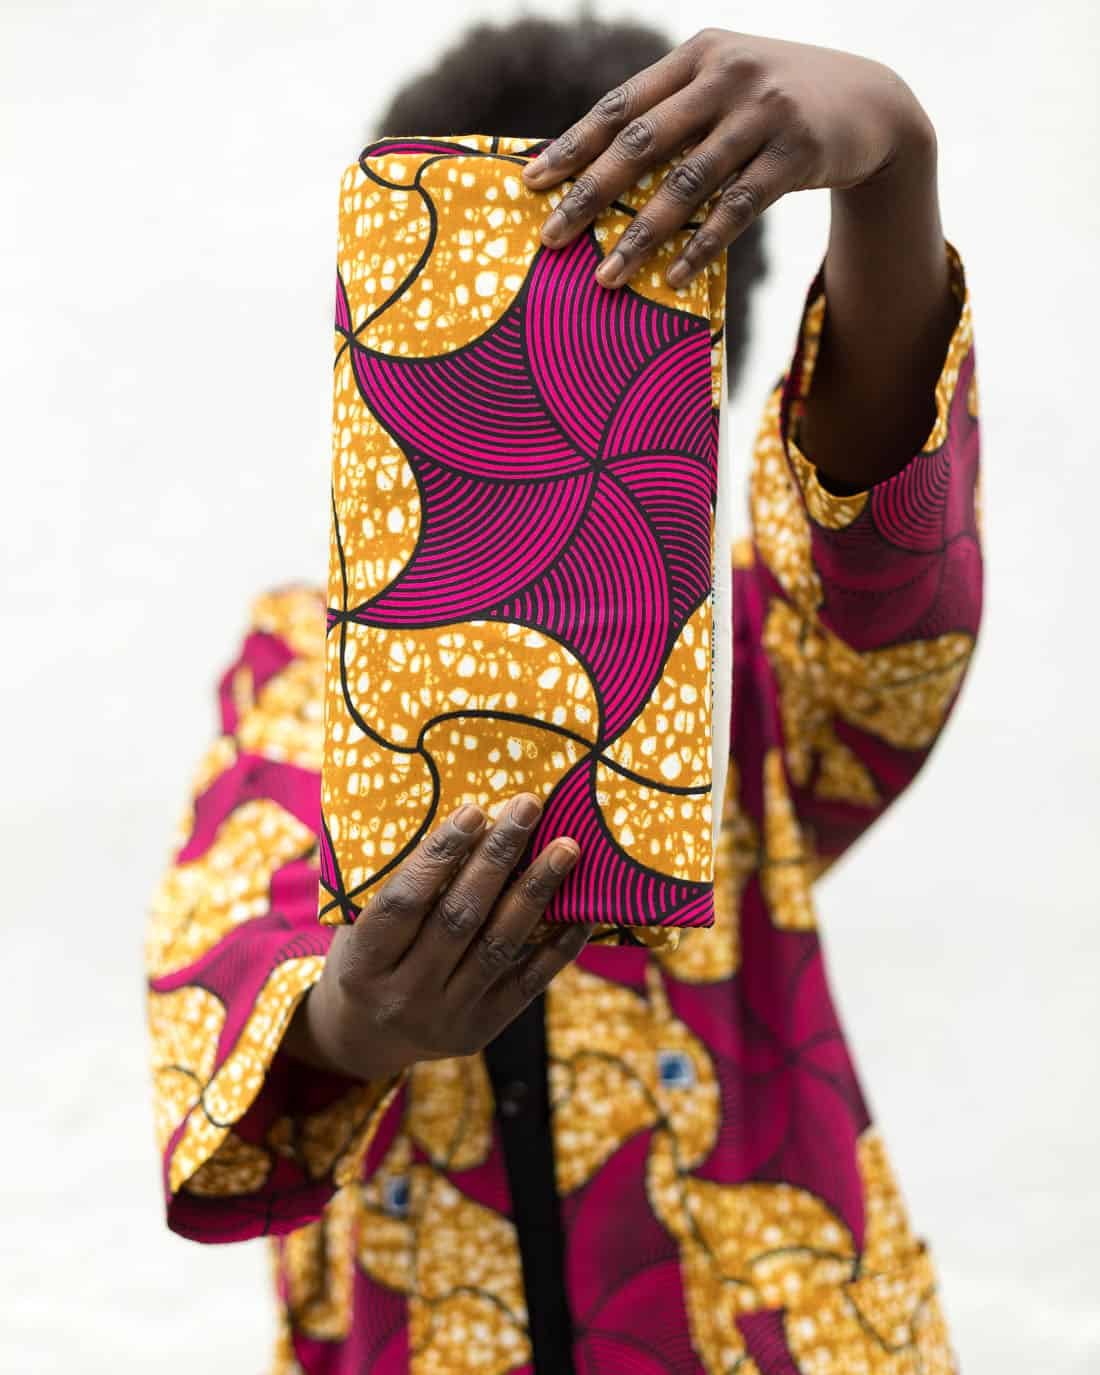 Modelo profesional sujetando unas telas con estampado africano rosas y amarillas